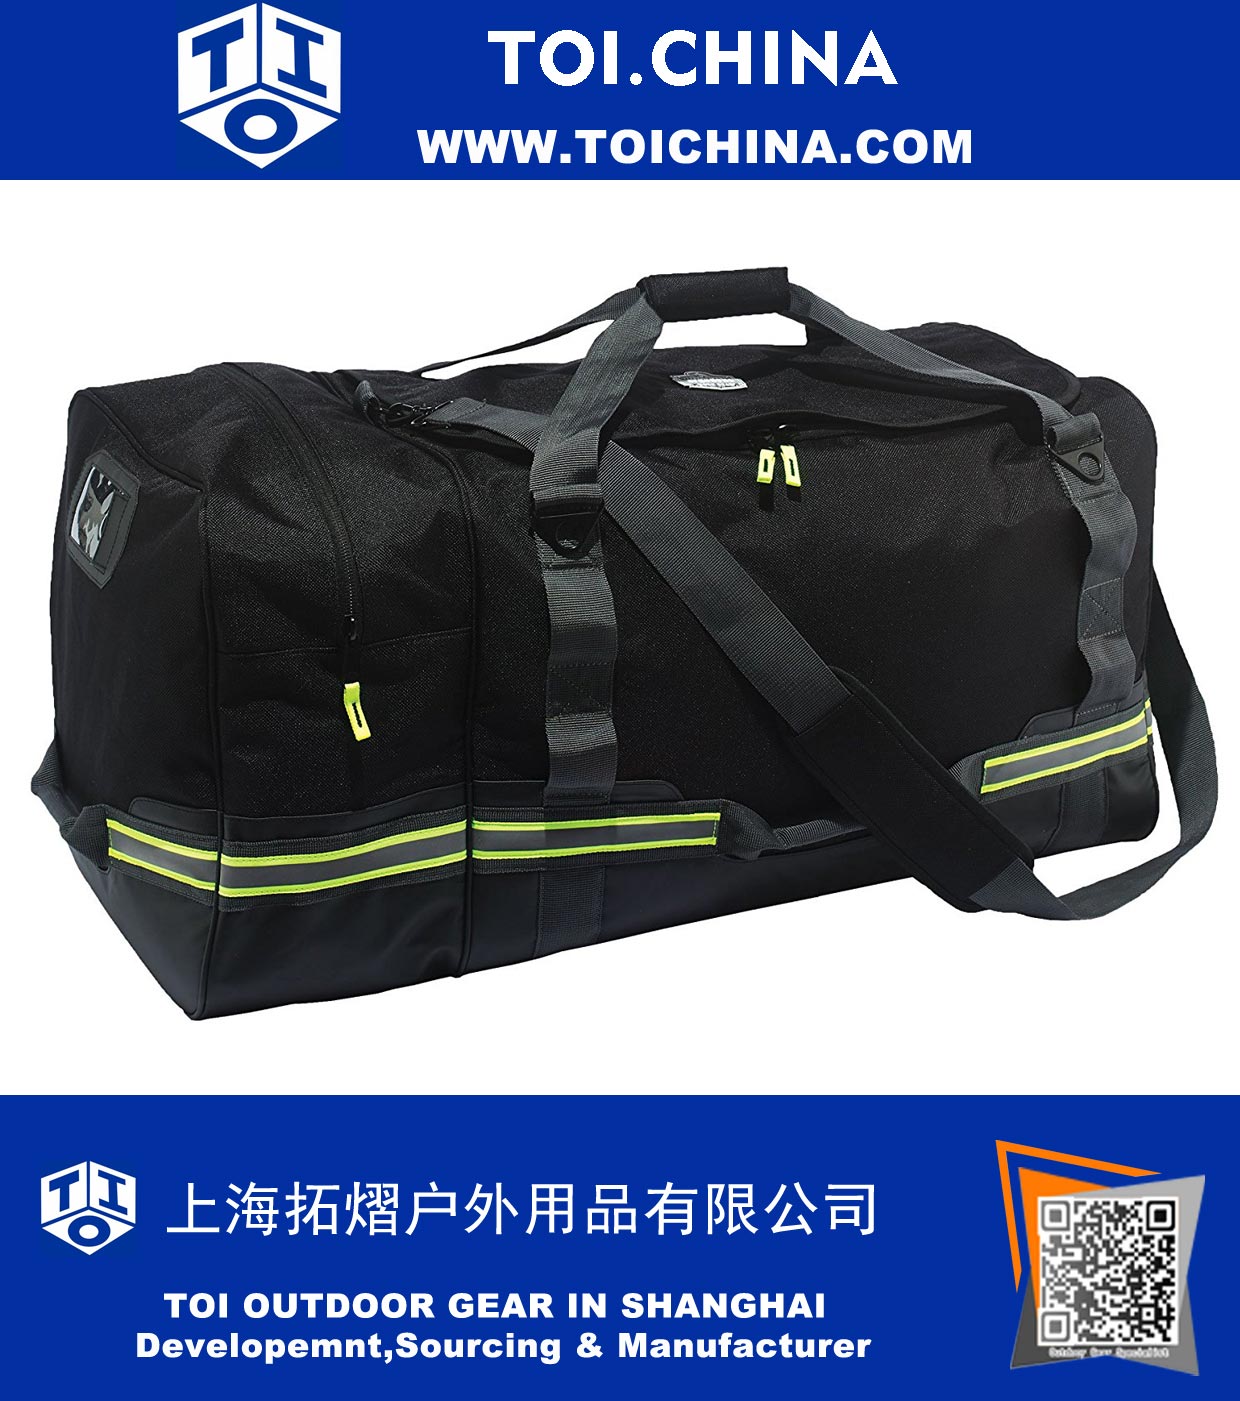 Paquete de seguridad para bomberos y bolsa de lona de seguridad para uso con protección contra incendios, protección contra caídas y bolsa deportiva